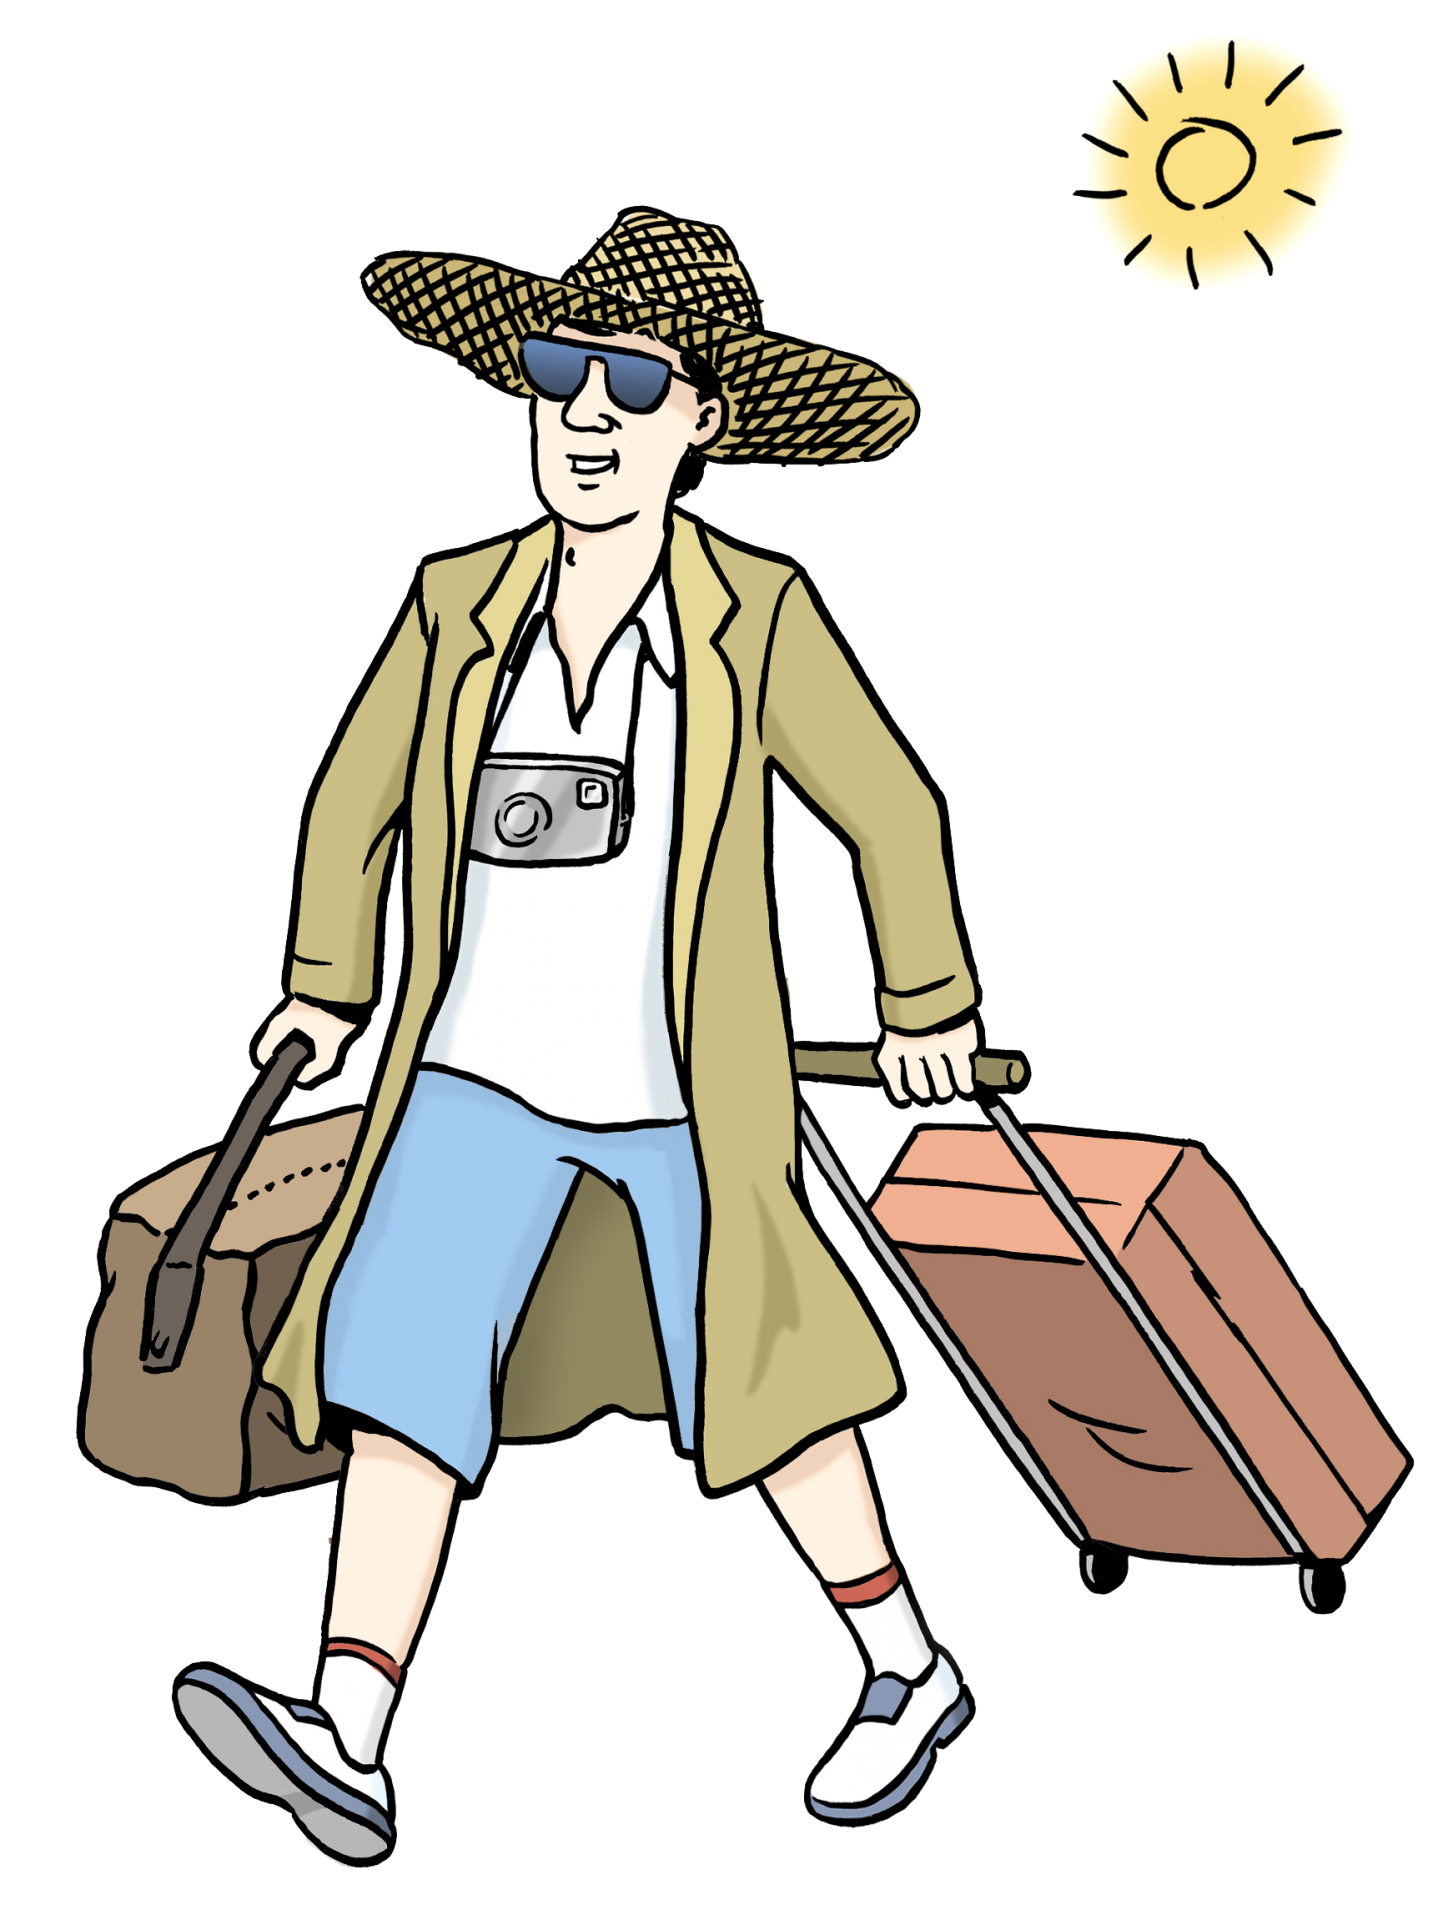 Ein Mann im Urlaub mit Sonnenbrille, Strohhut und Koffer